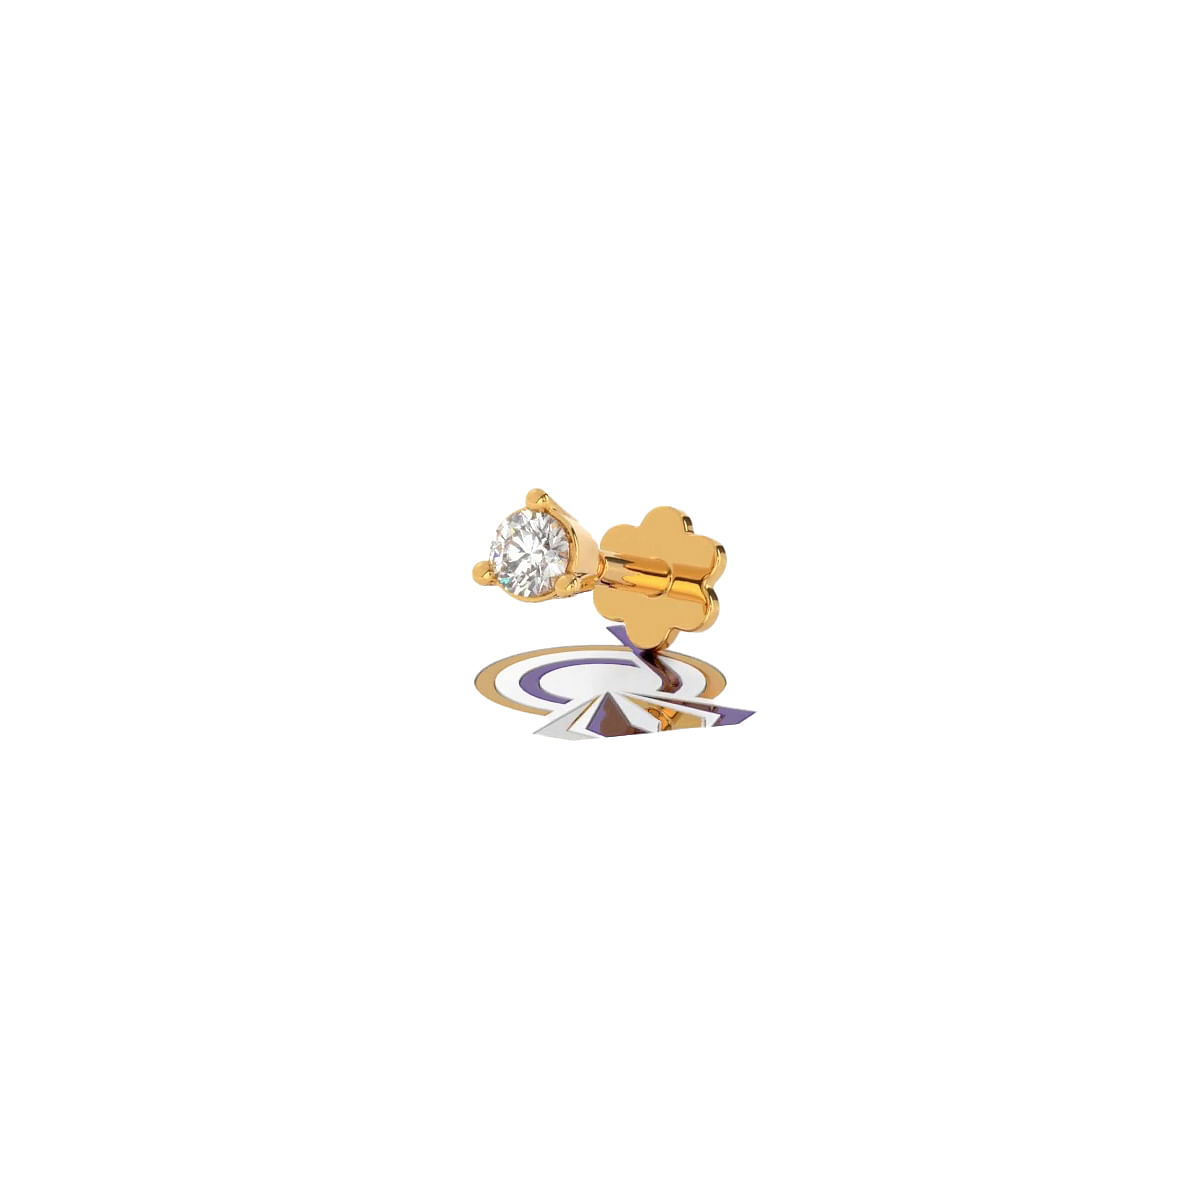 Yellow gold Anushka Diamond Nosepin with single diamond